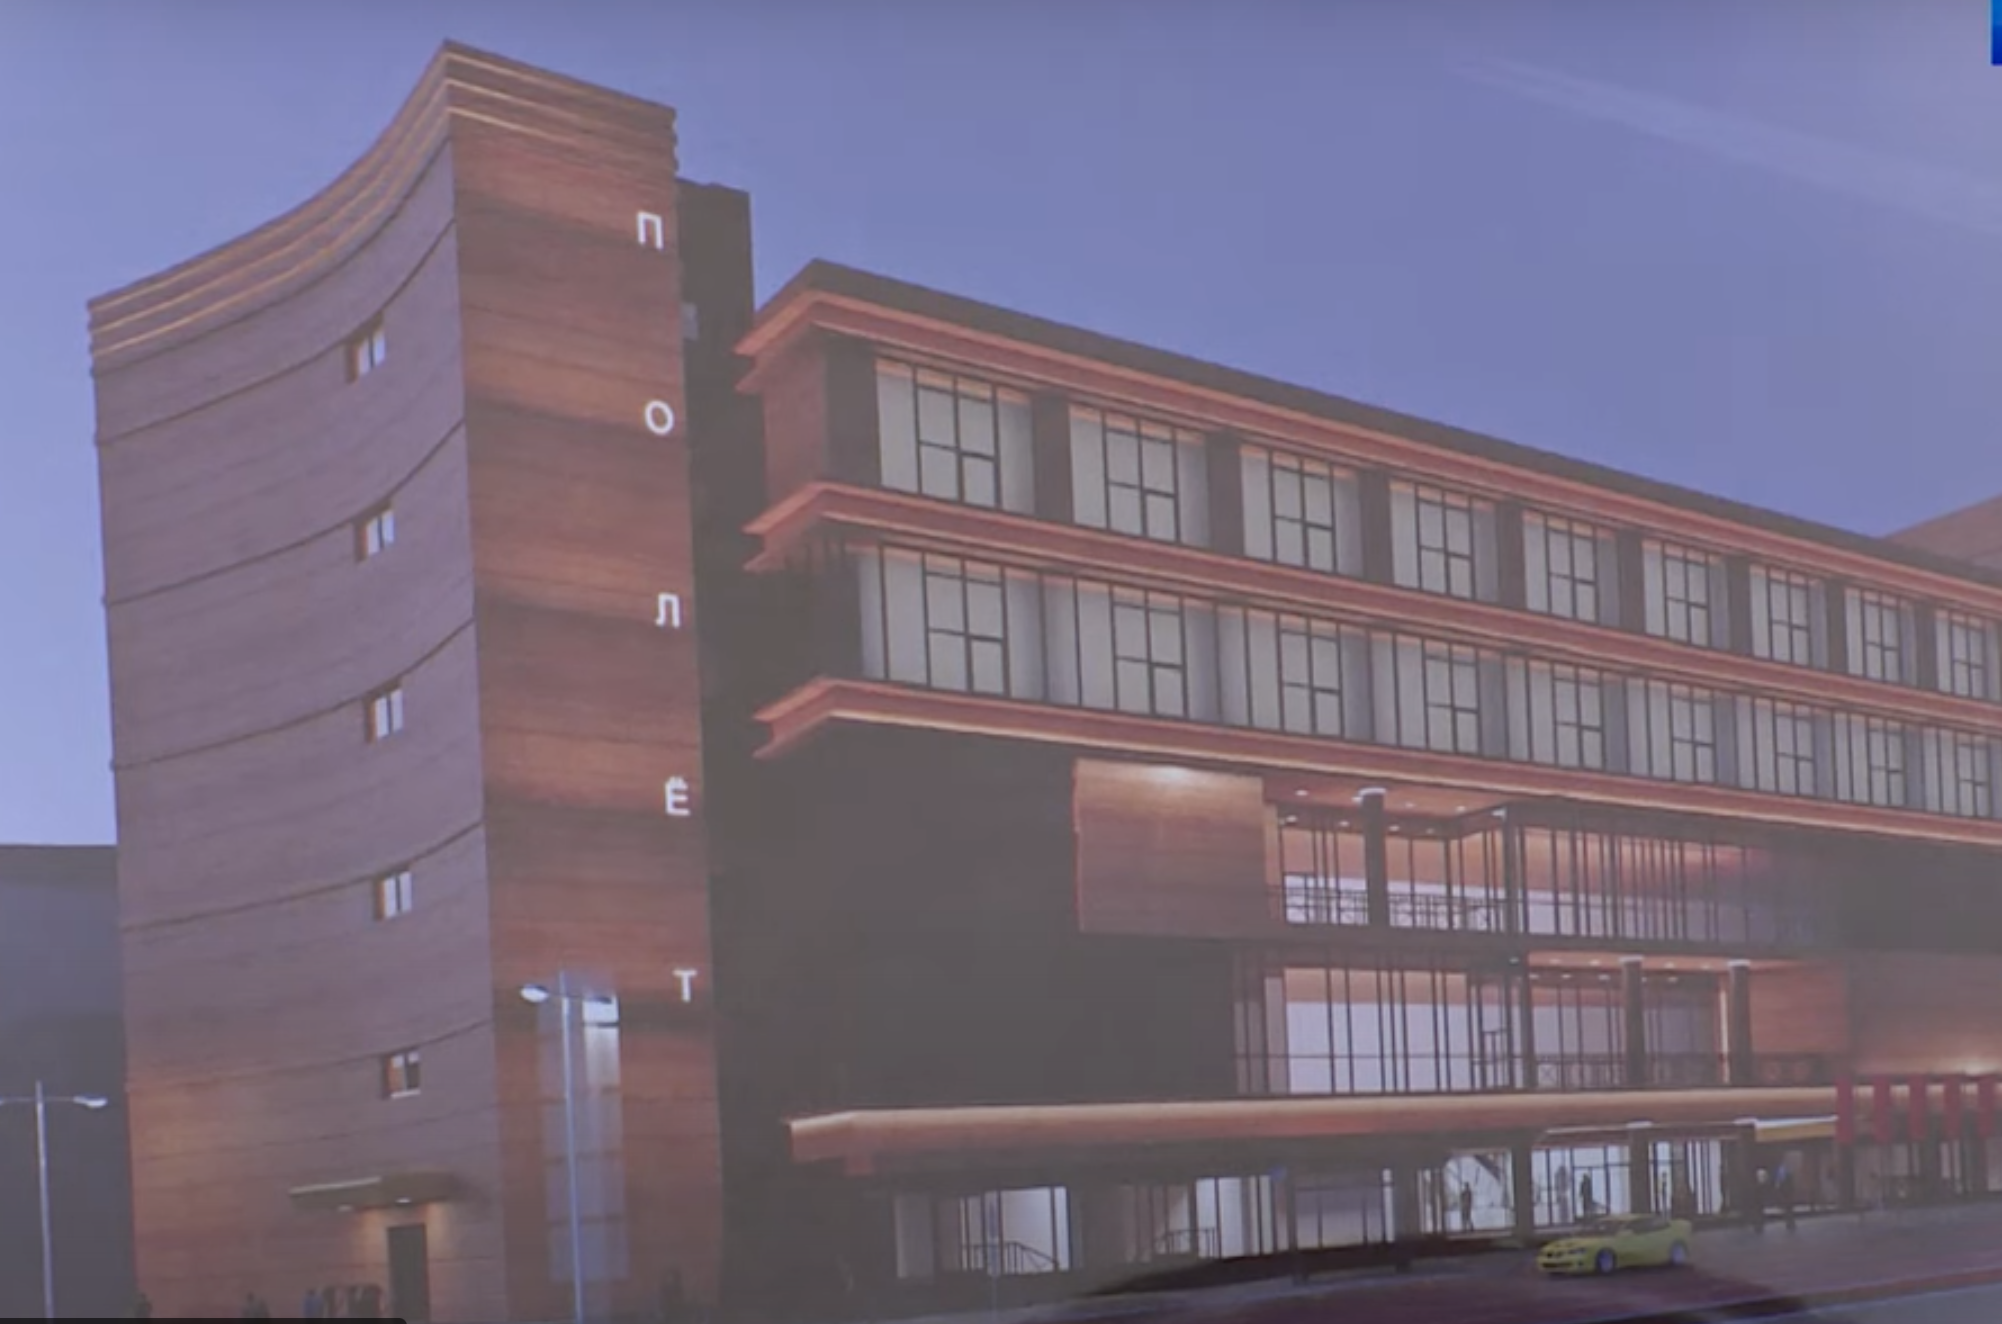 Архитектурная комиссия одобрила проект нового фасада здания ТЦ "Полет" в Иванове